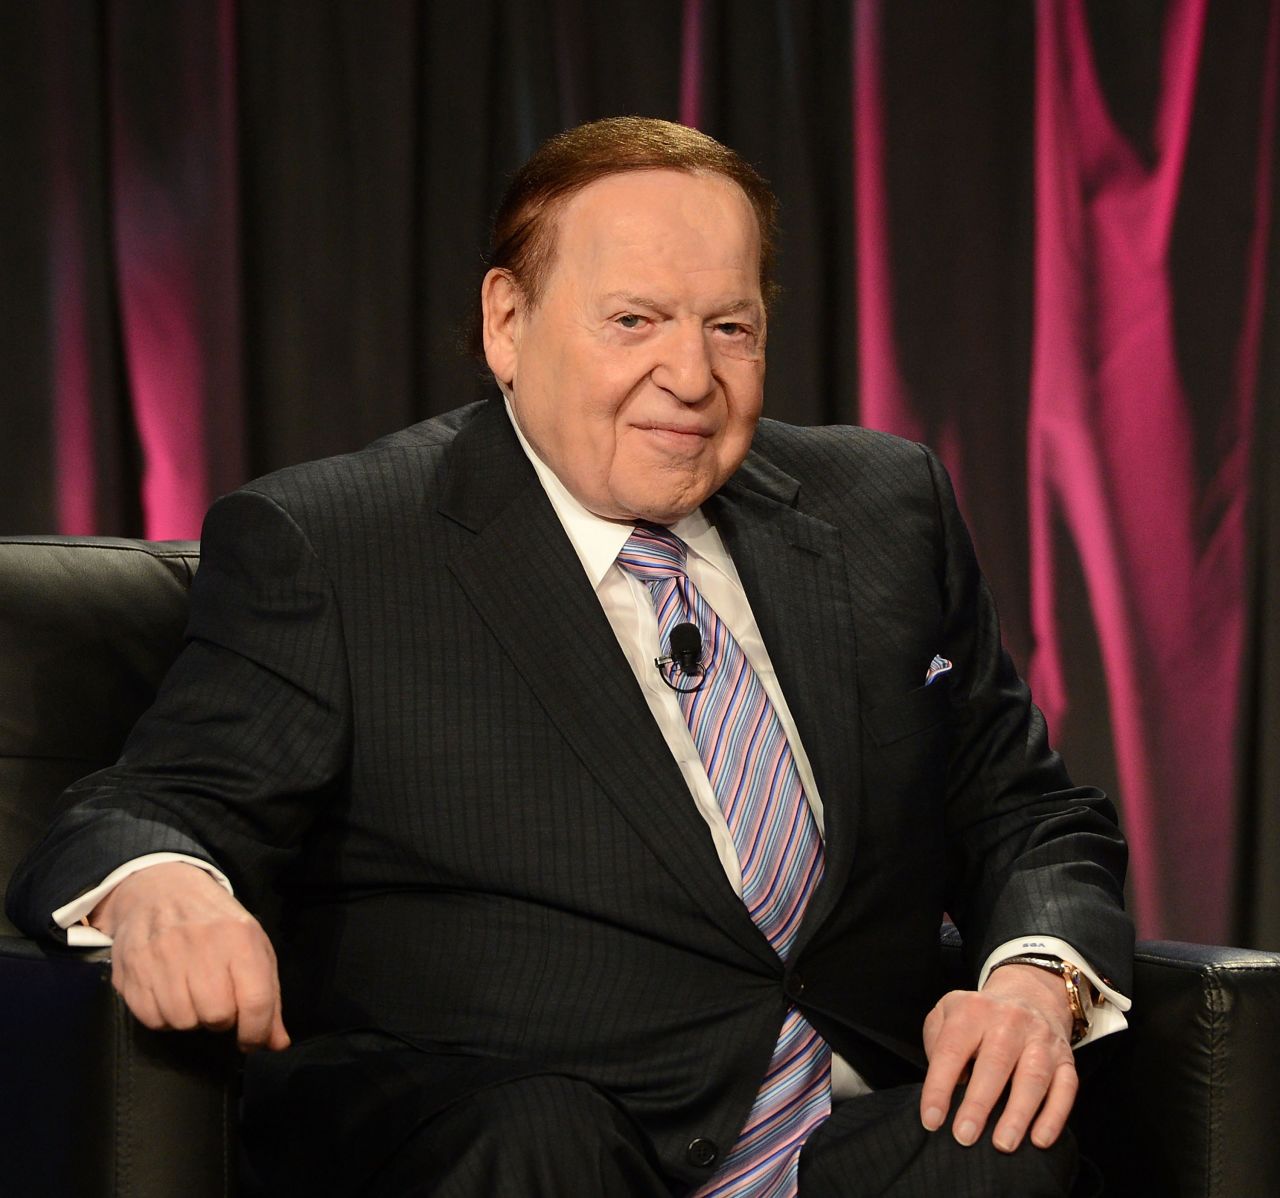 Adelson speaks at a Global Gaming Expo in Las Vegas in 2014.